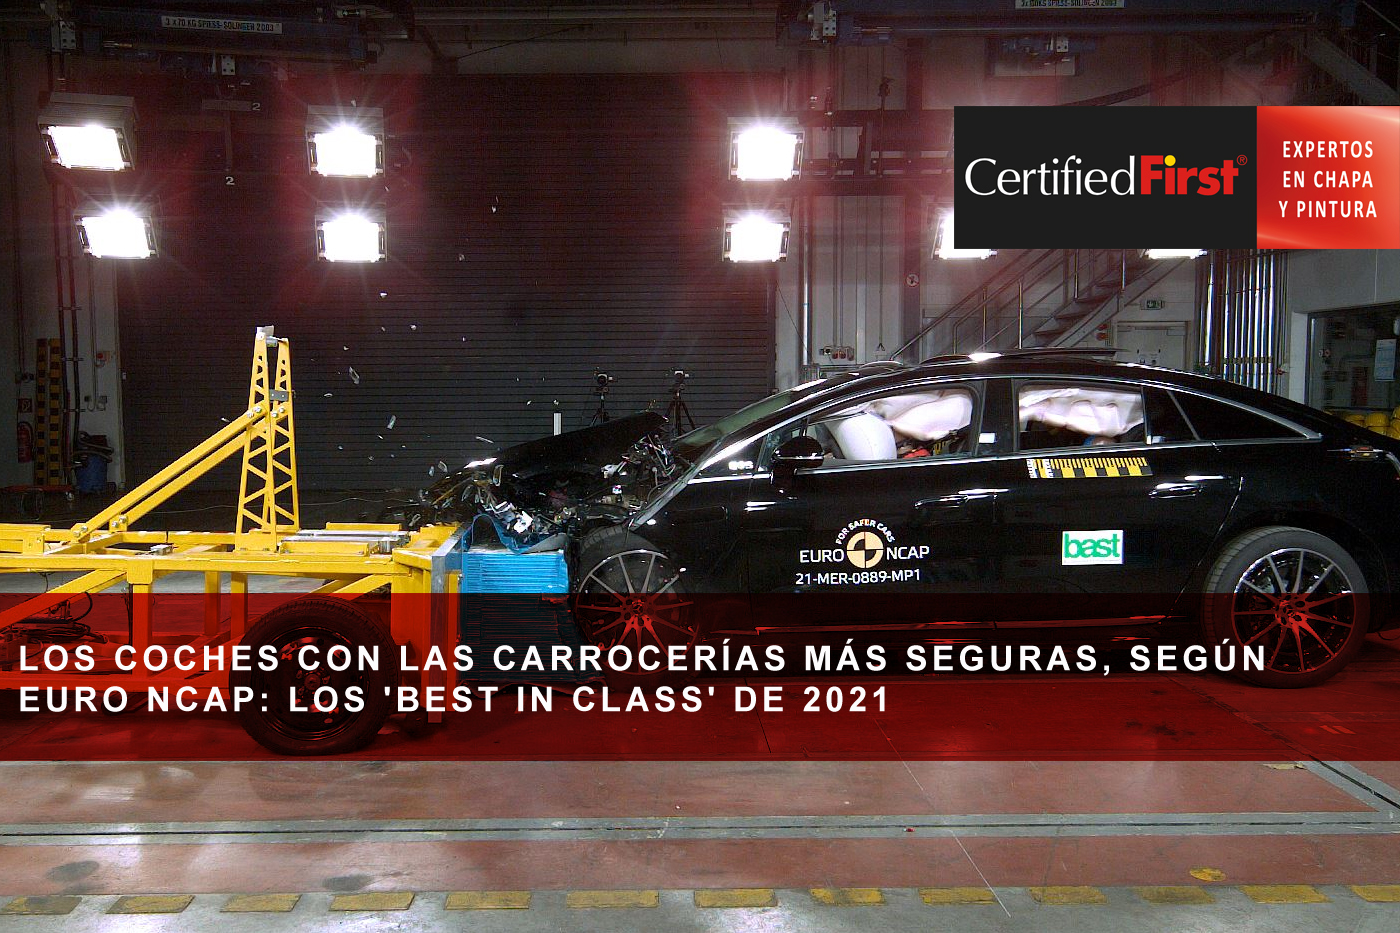 Los coches con las carrocerías más seguras, según Euro NCAP: los 'Best in Class' de 2021